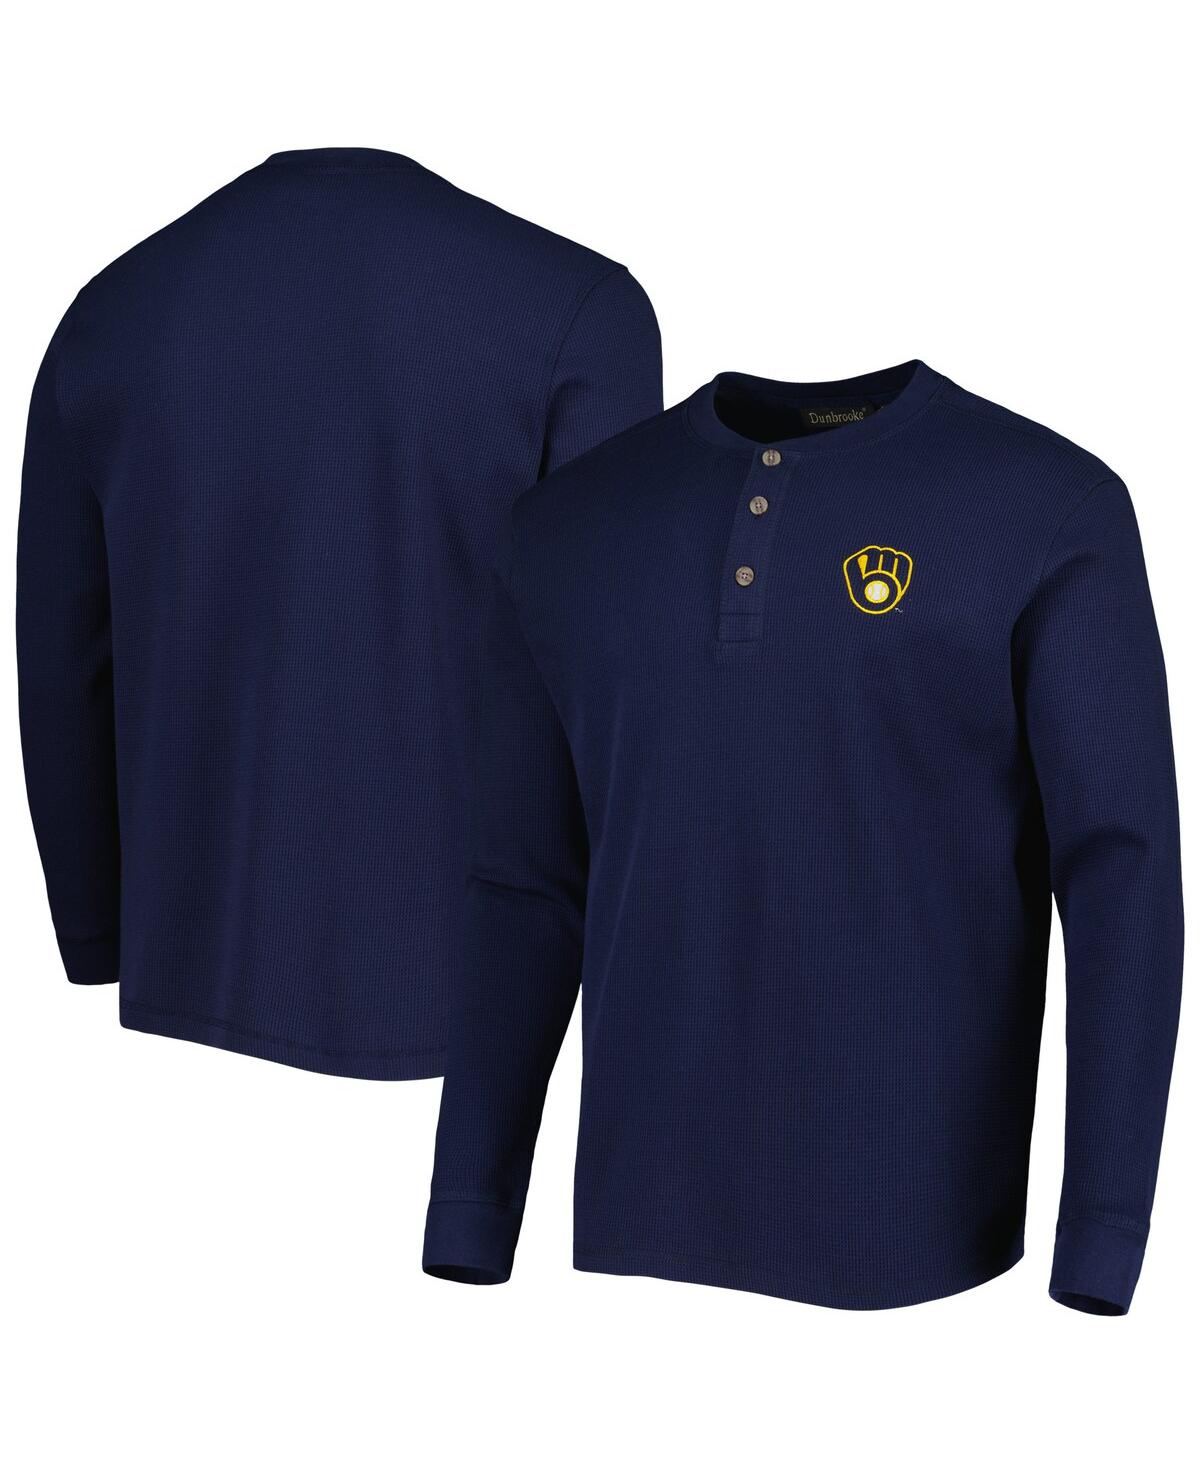 Men's Dunbrooke Milwaukee Brewers Navy Maverick Long Sleeve T-shirt - Navy